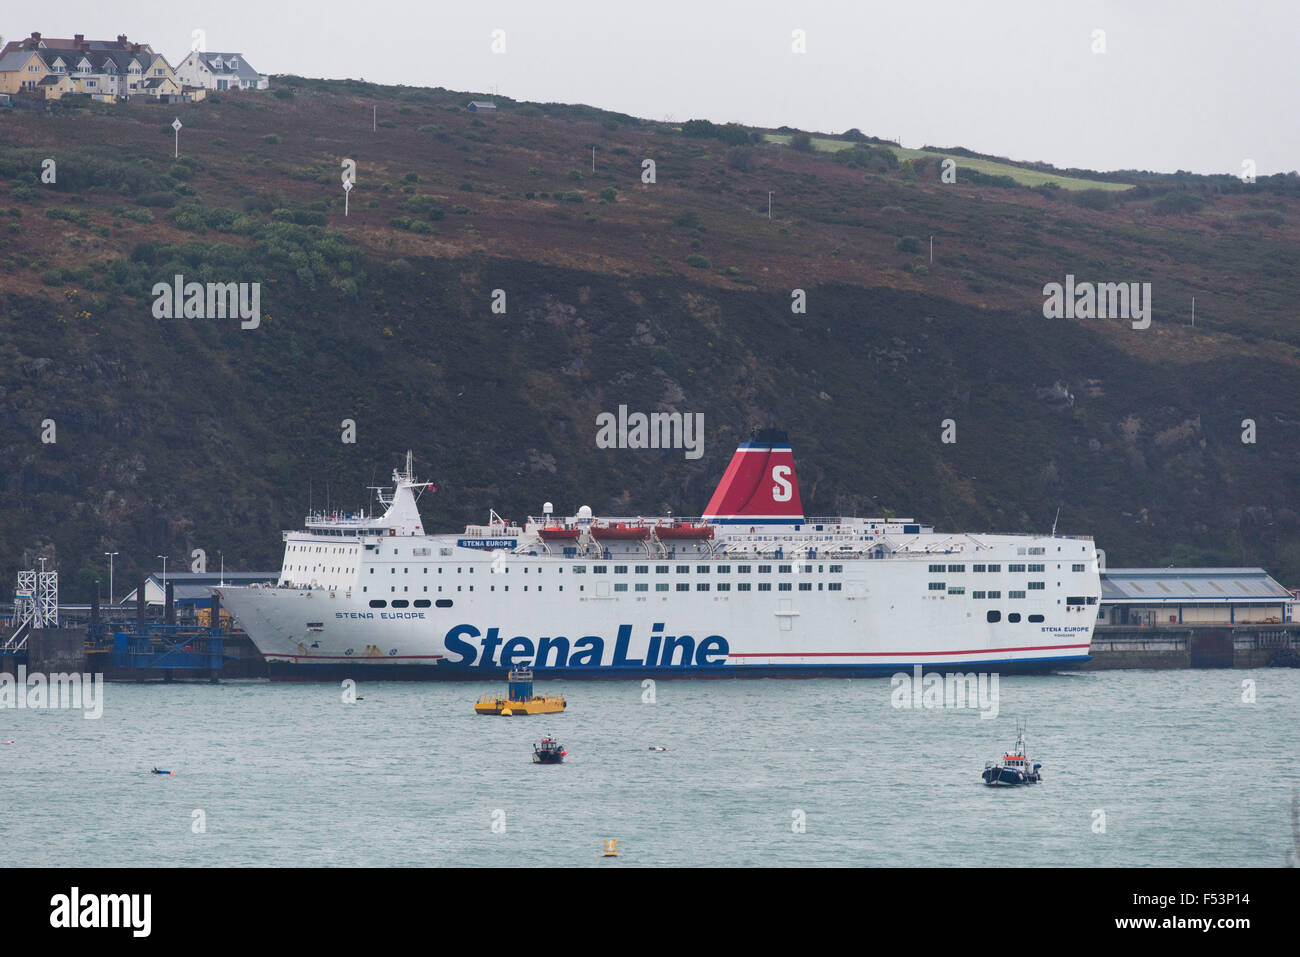 Un ferry Stena Line à Fishguard Harbour, Goodwick, Ouest du pays de Galles. Banque D'Images